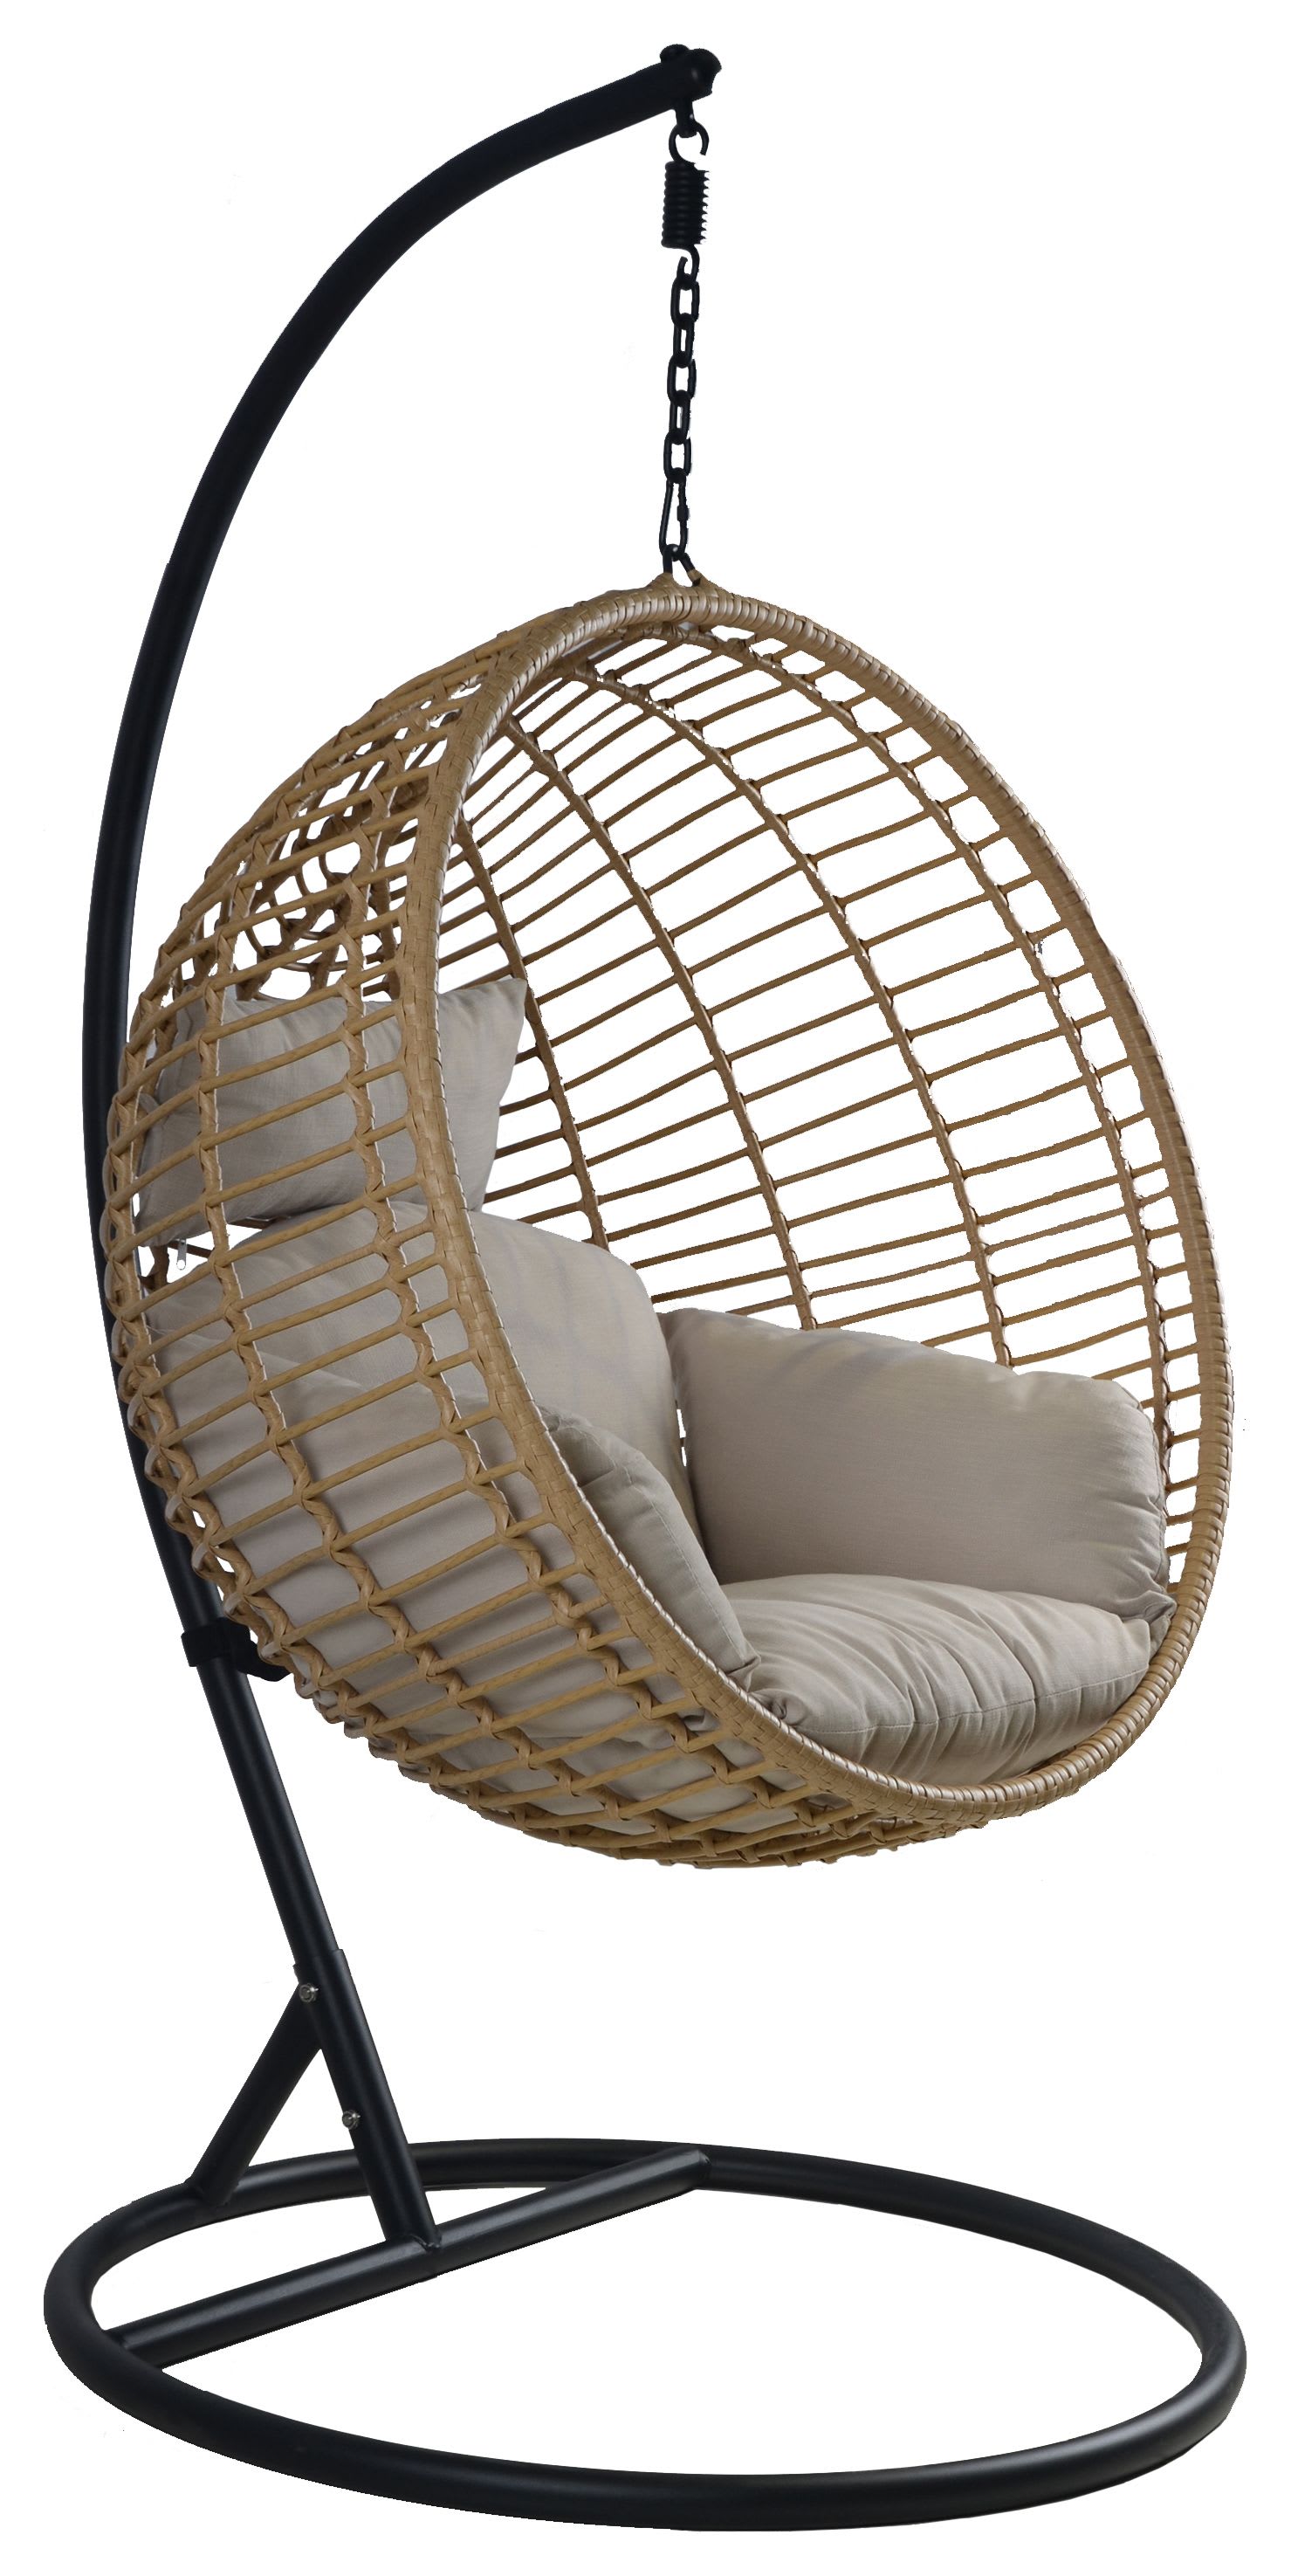 Charles Bentley Single Hanging Garden Swing Chair -